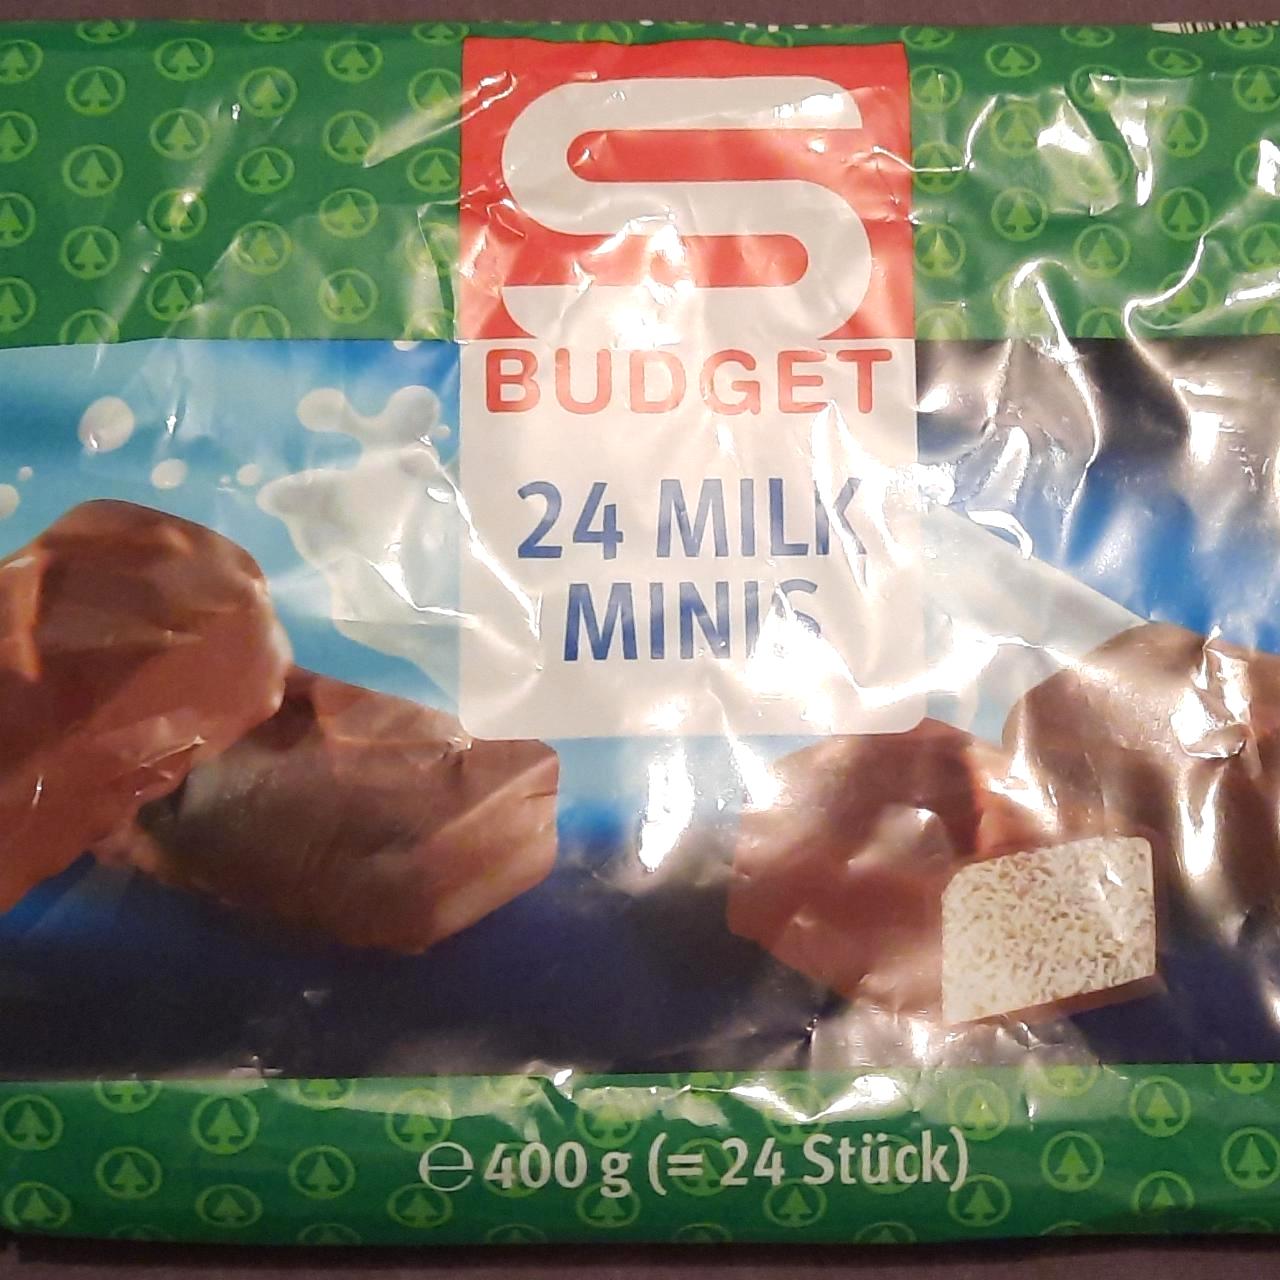 Képek - Milk minis csokoládé S Budget